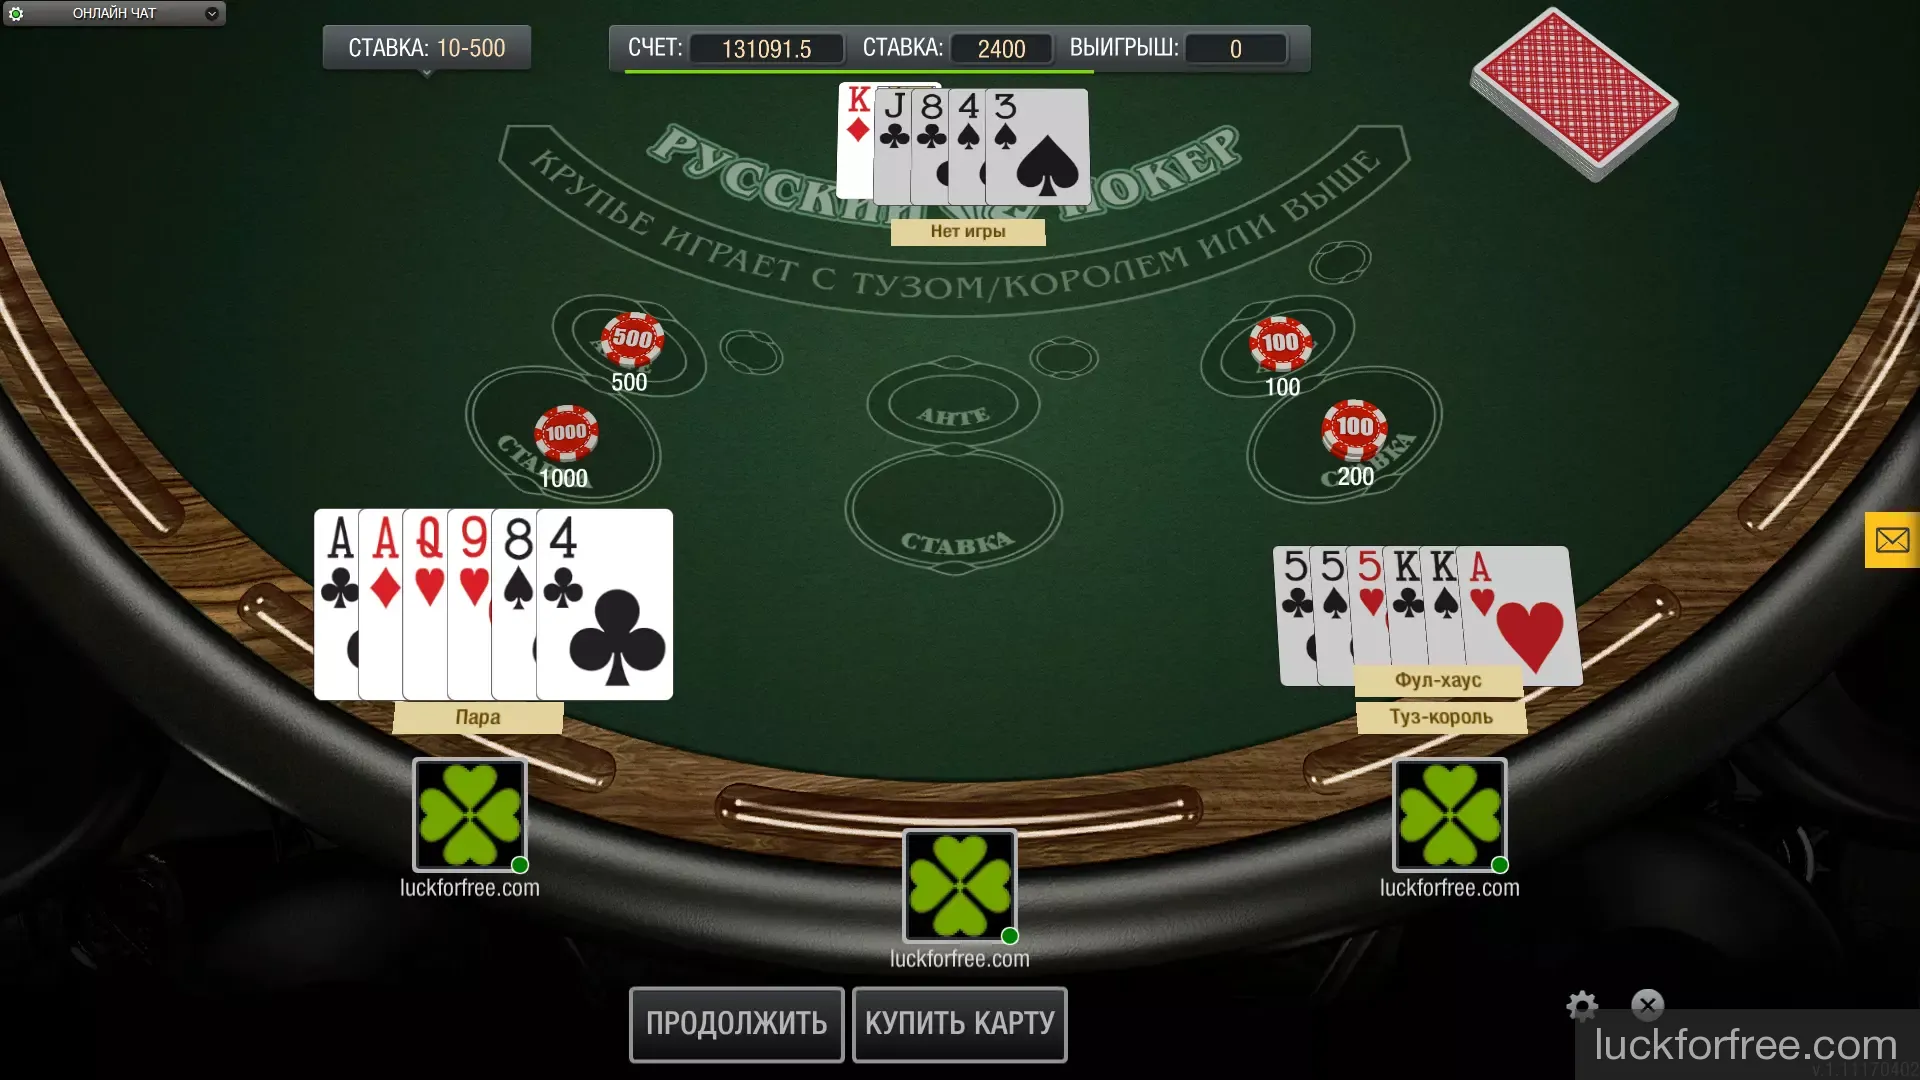 Русский покер играть онлайн им фильм казино рояль смотреть онлайн бесплатно в качестве hd 720